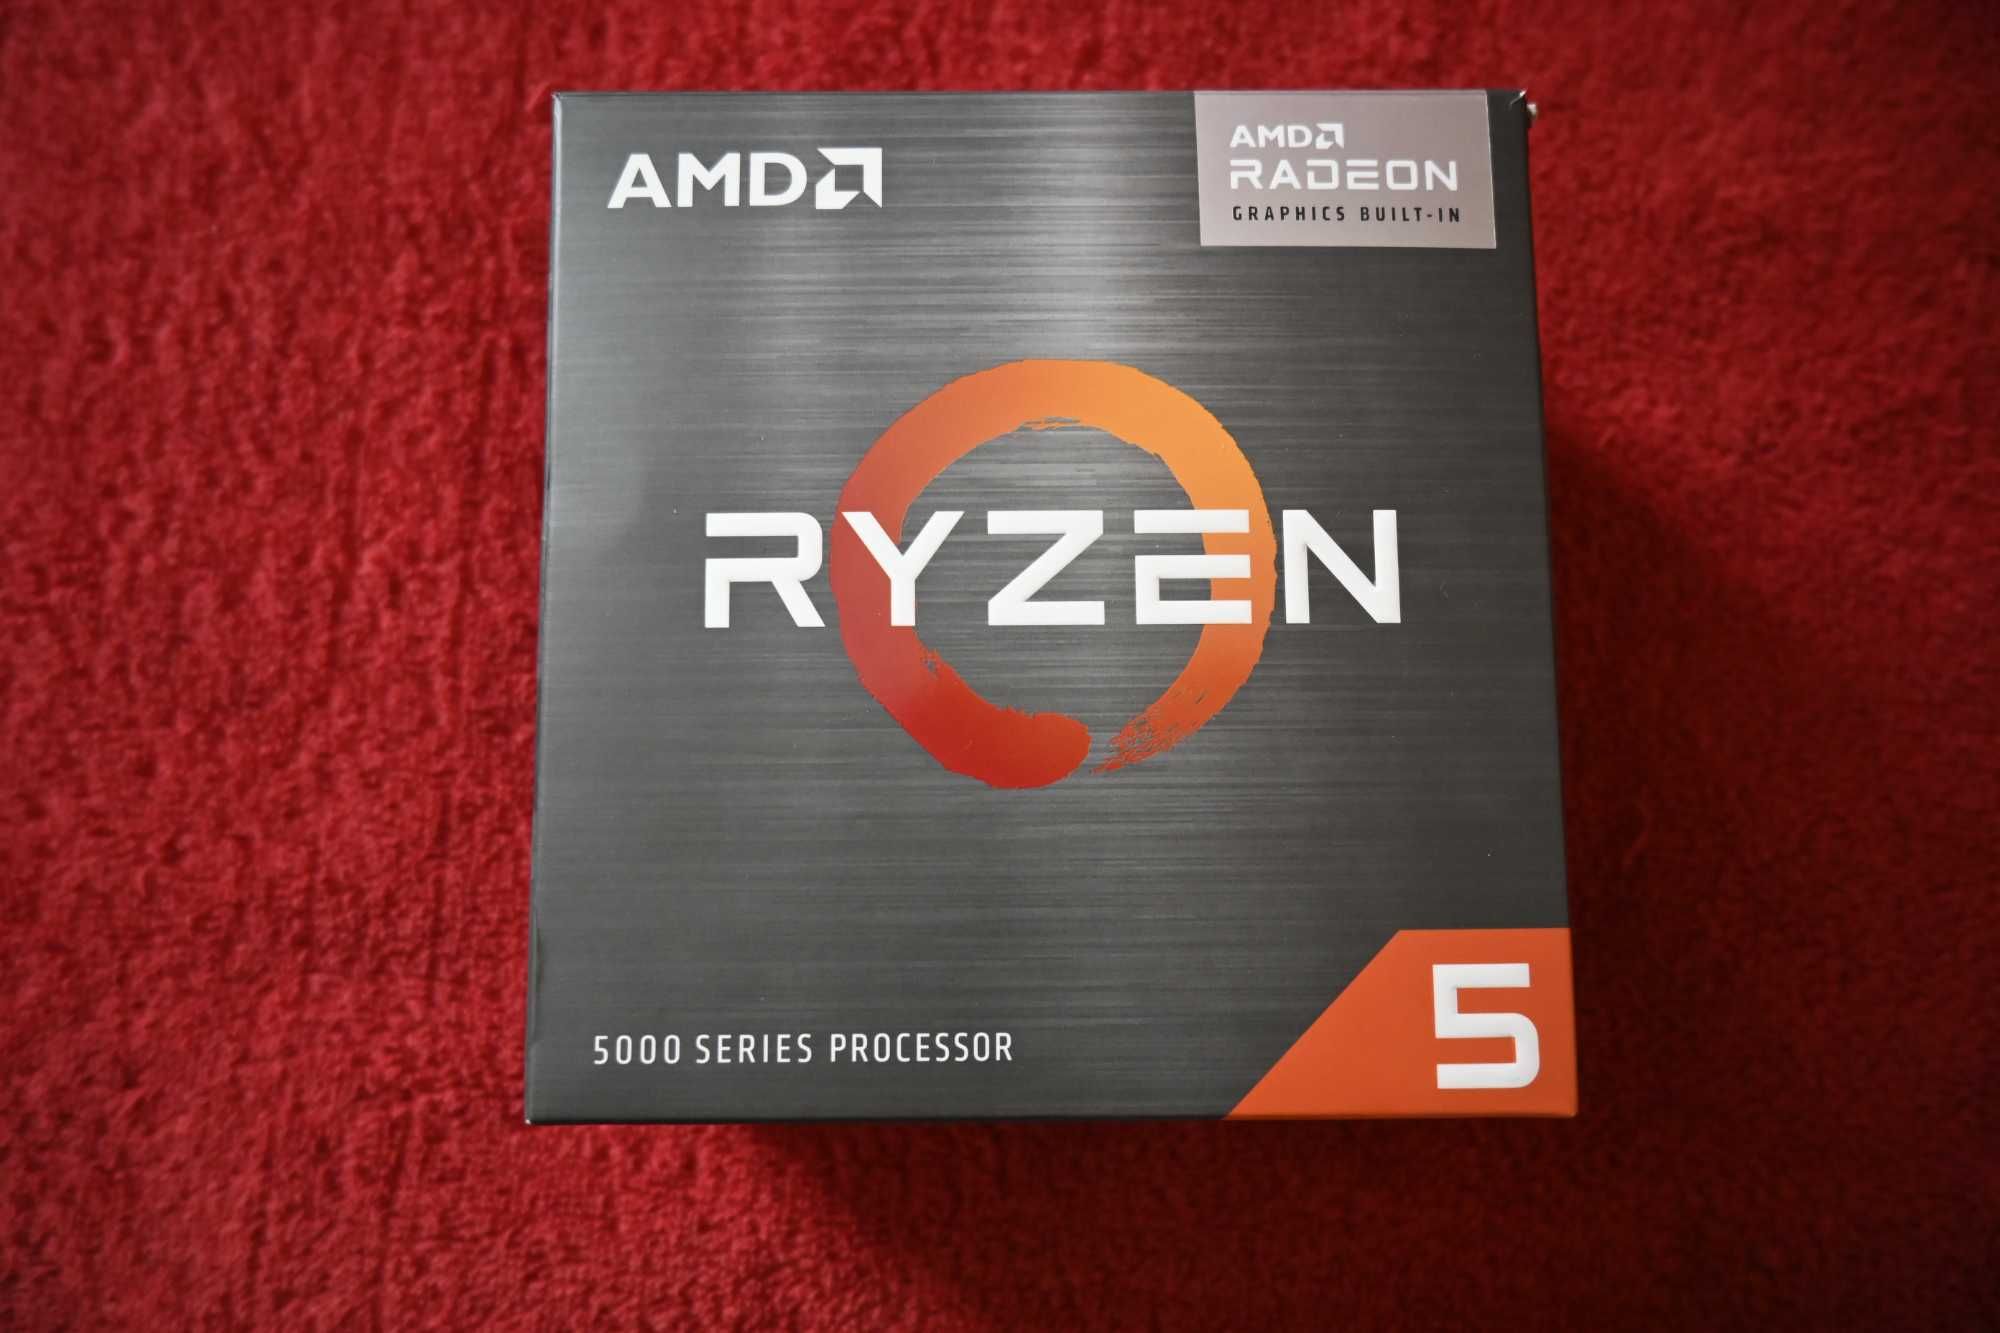 Процесор AMD Ryzen 3 3200G